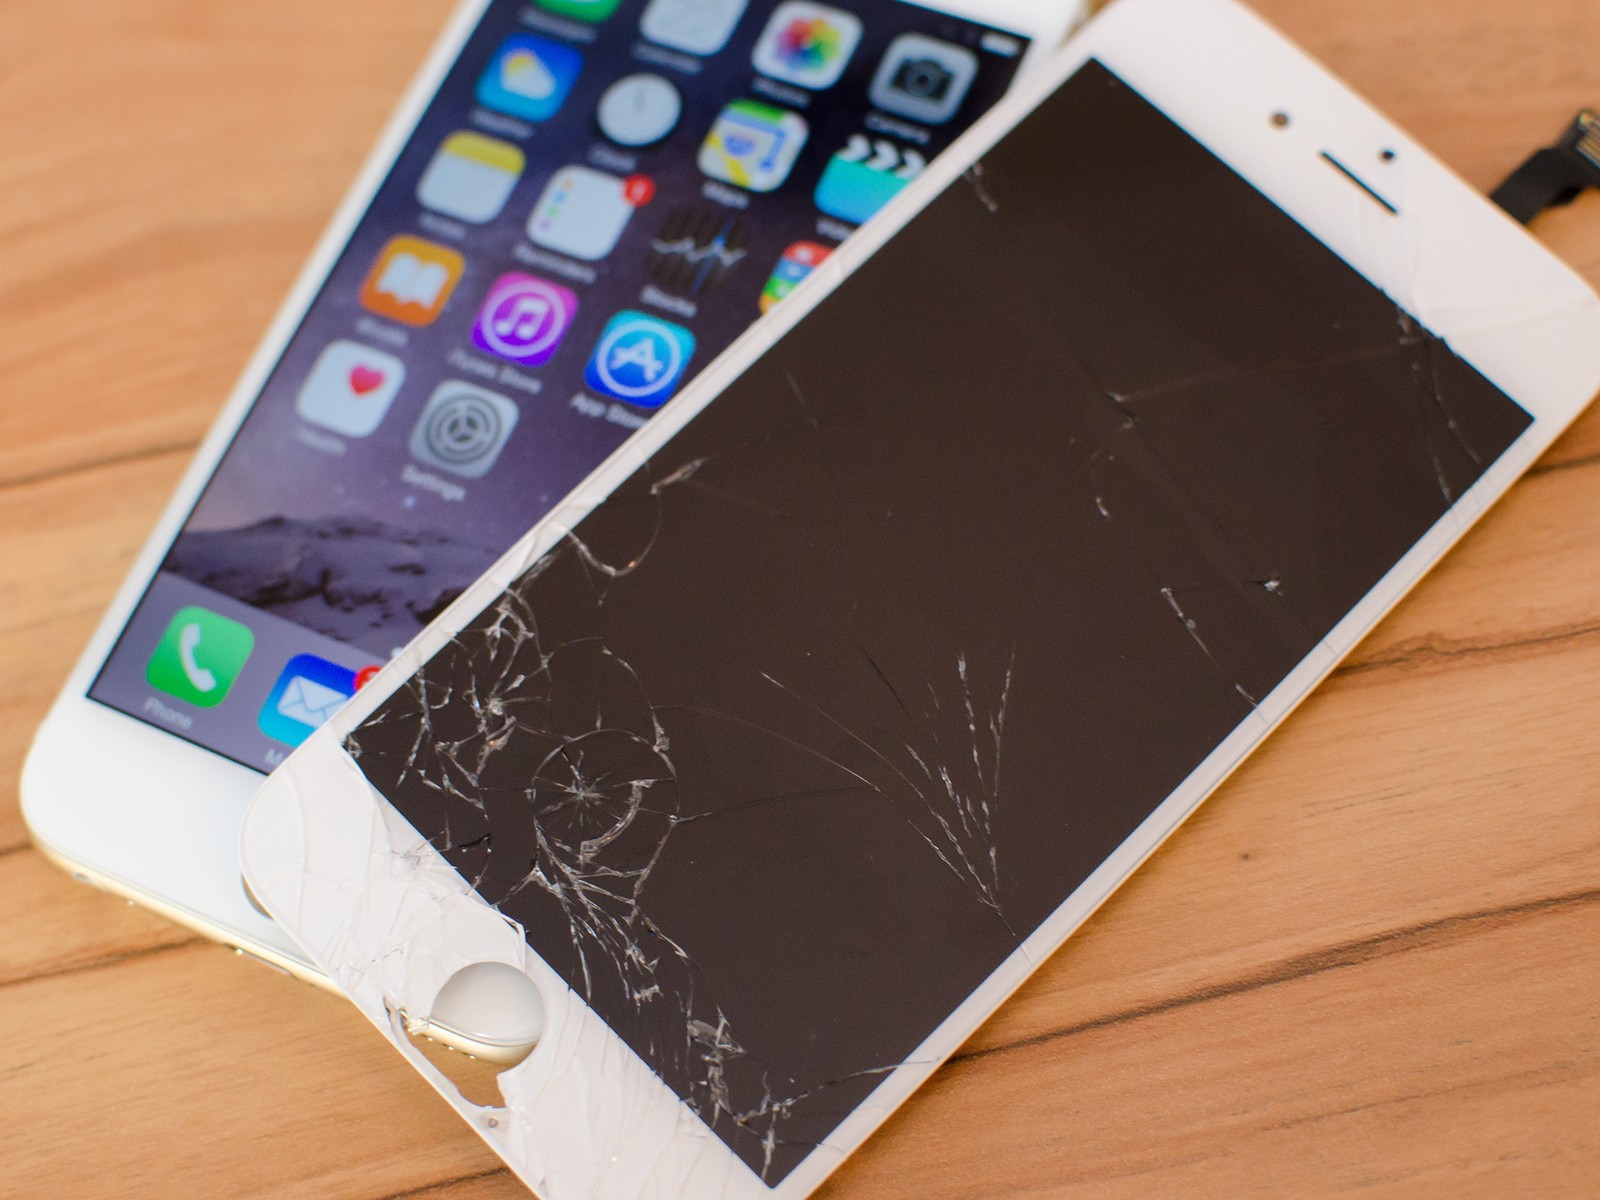 iphone 6 broken display fixed hero